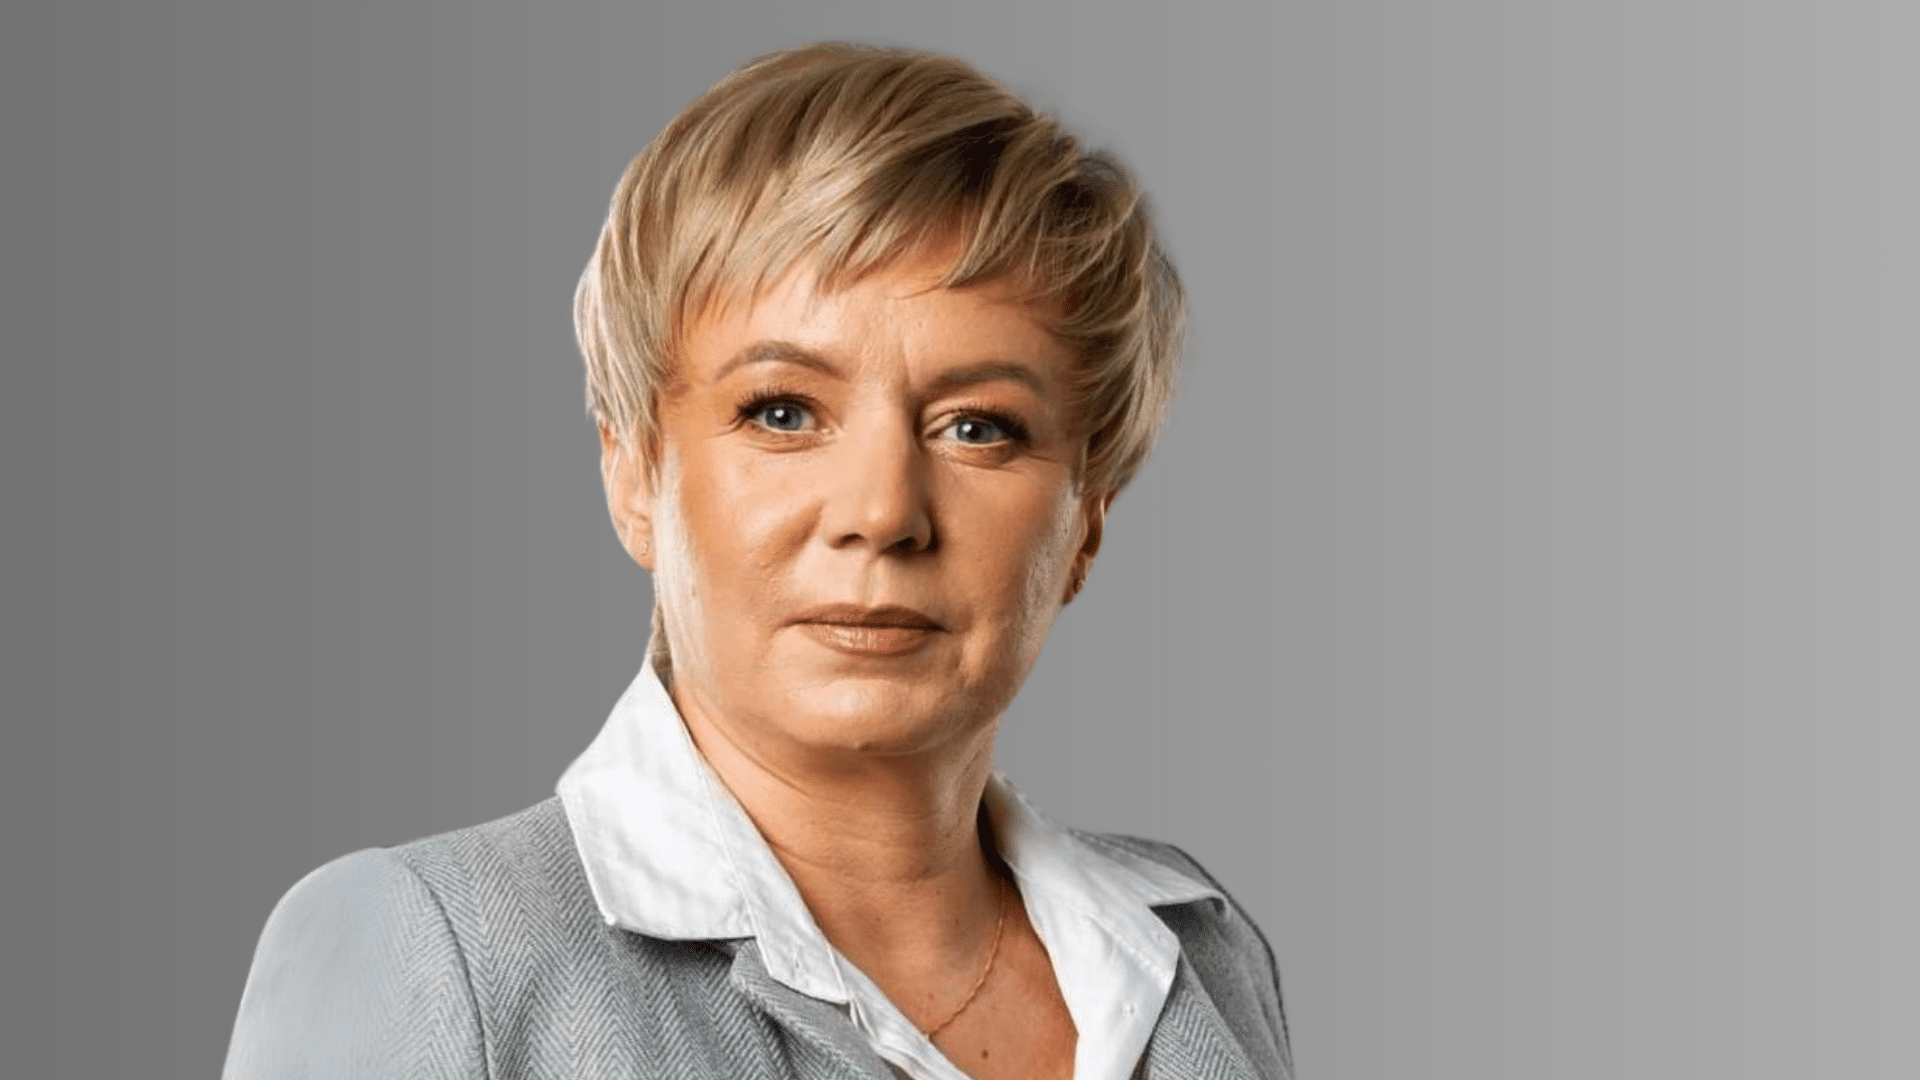 Inwestujmy w przedsiębiorców! – rozmowa z Joanną Grochal, kandydatką do Sejmiku Województwa Warmińsko-Mazurskiego polityka Olsztyn, Wiadomości